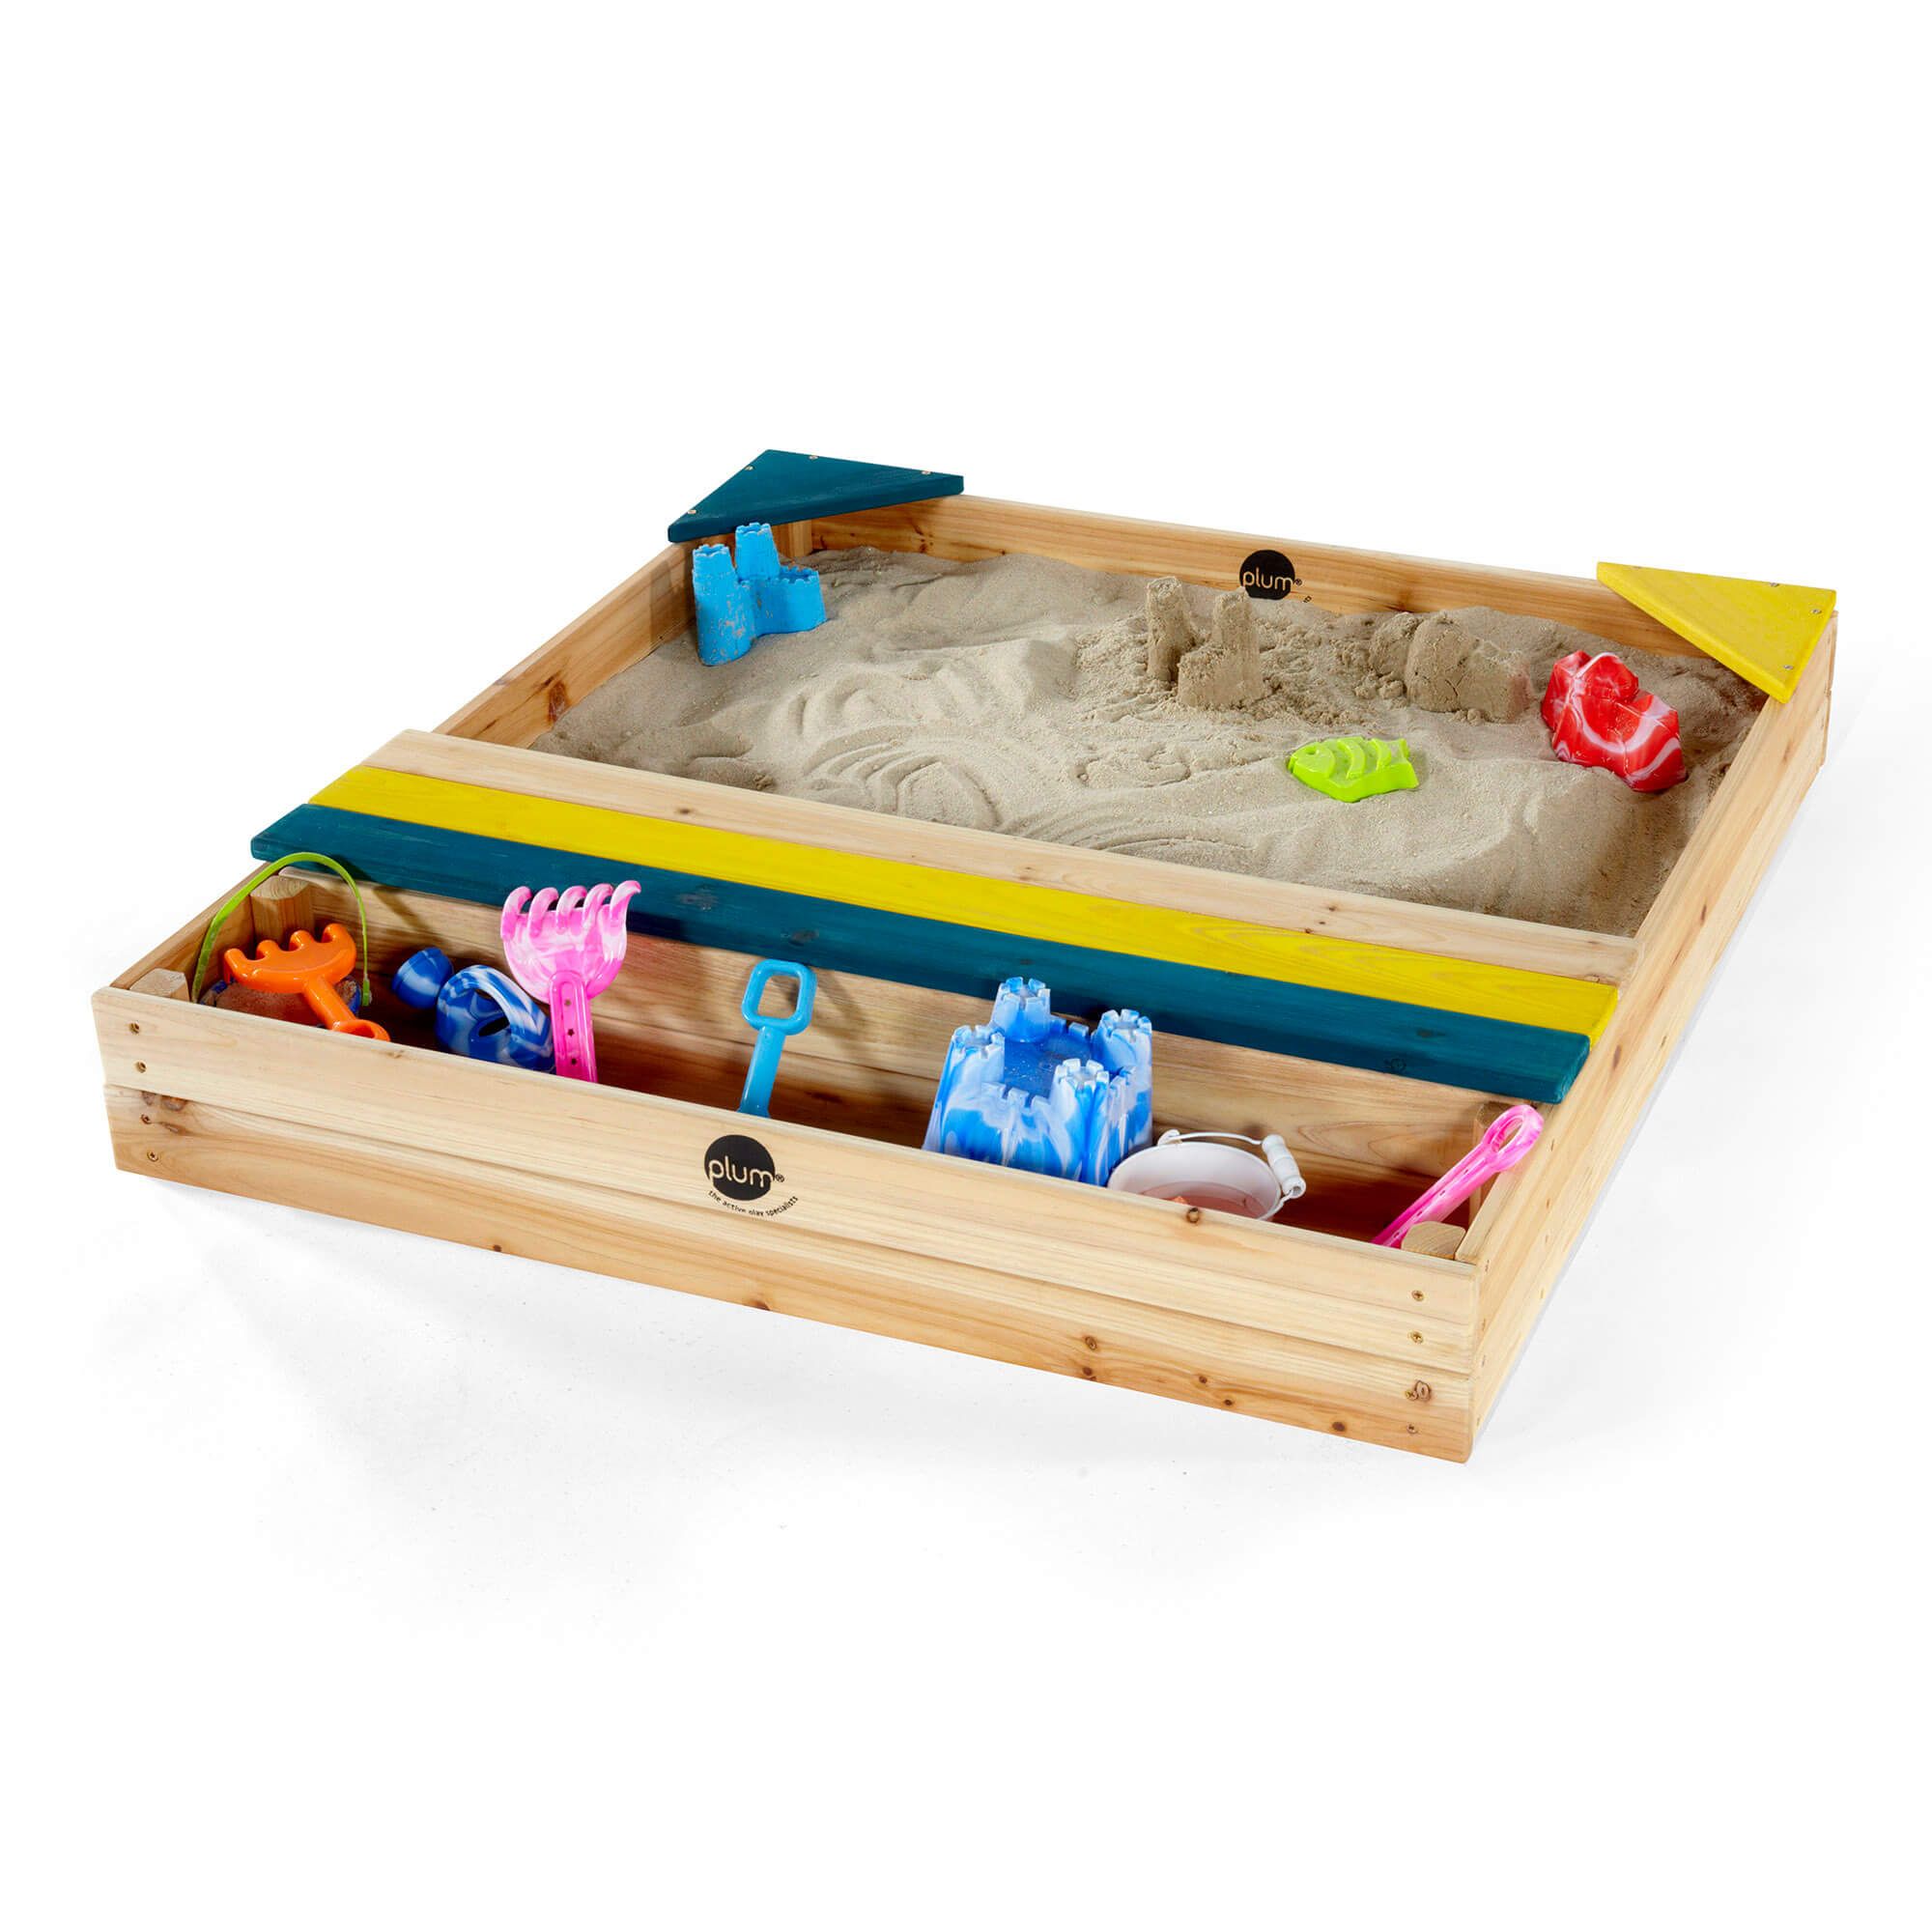 Cutie de nisip din lemn cu loc pentru depozitarea jucăriilor